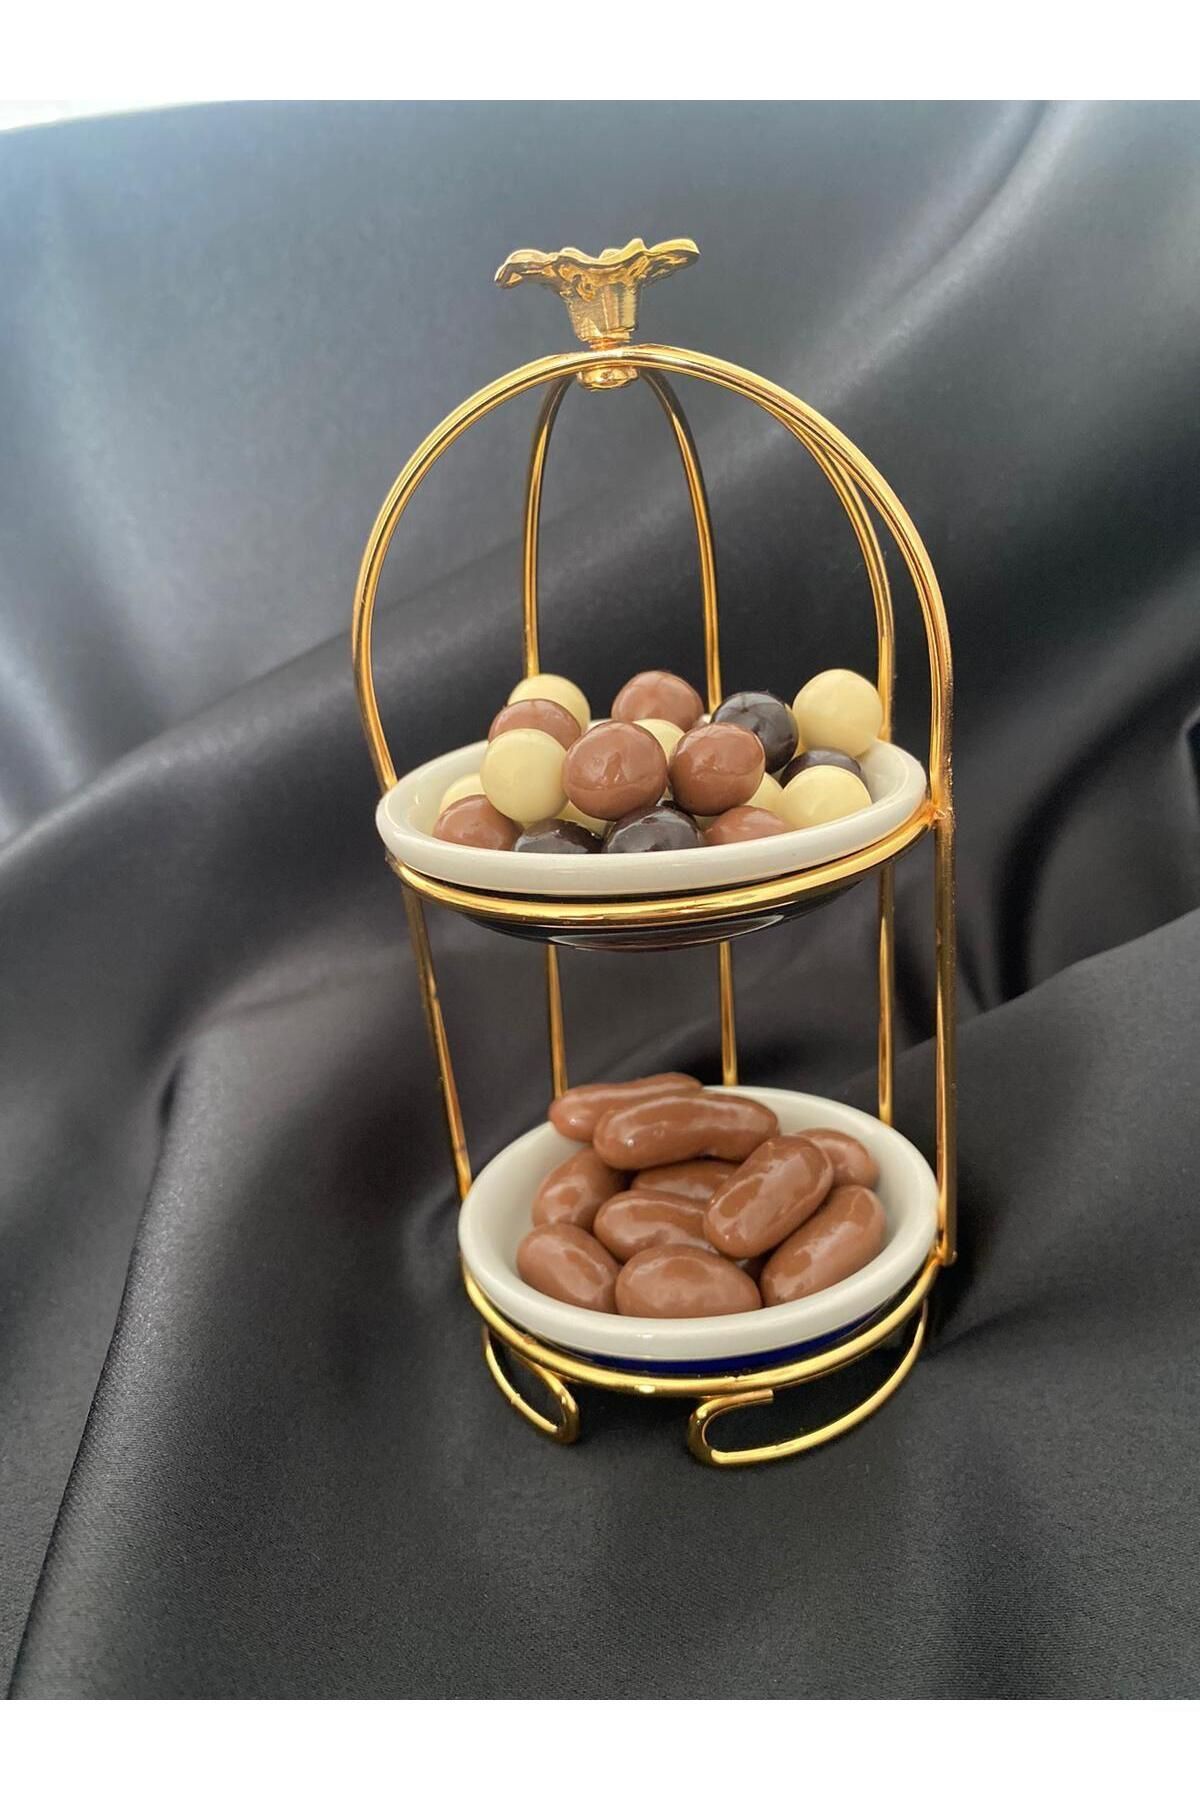 Hayveys 2 Katlı Gül Dekorlu Kafes Model Gold Mini Sunumluk Lokumluk Çerezlik Şekerlik Kahve Yanı Sunum Tabak